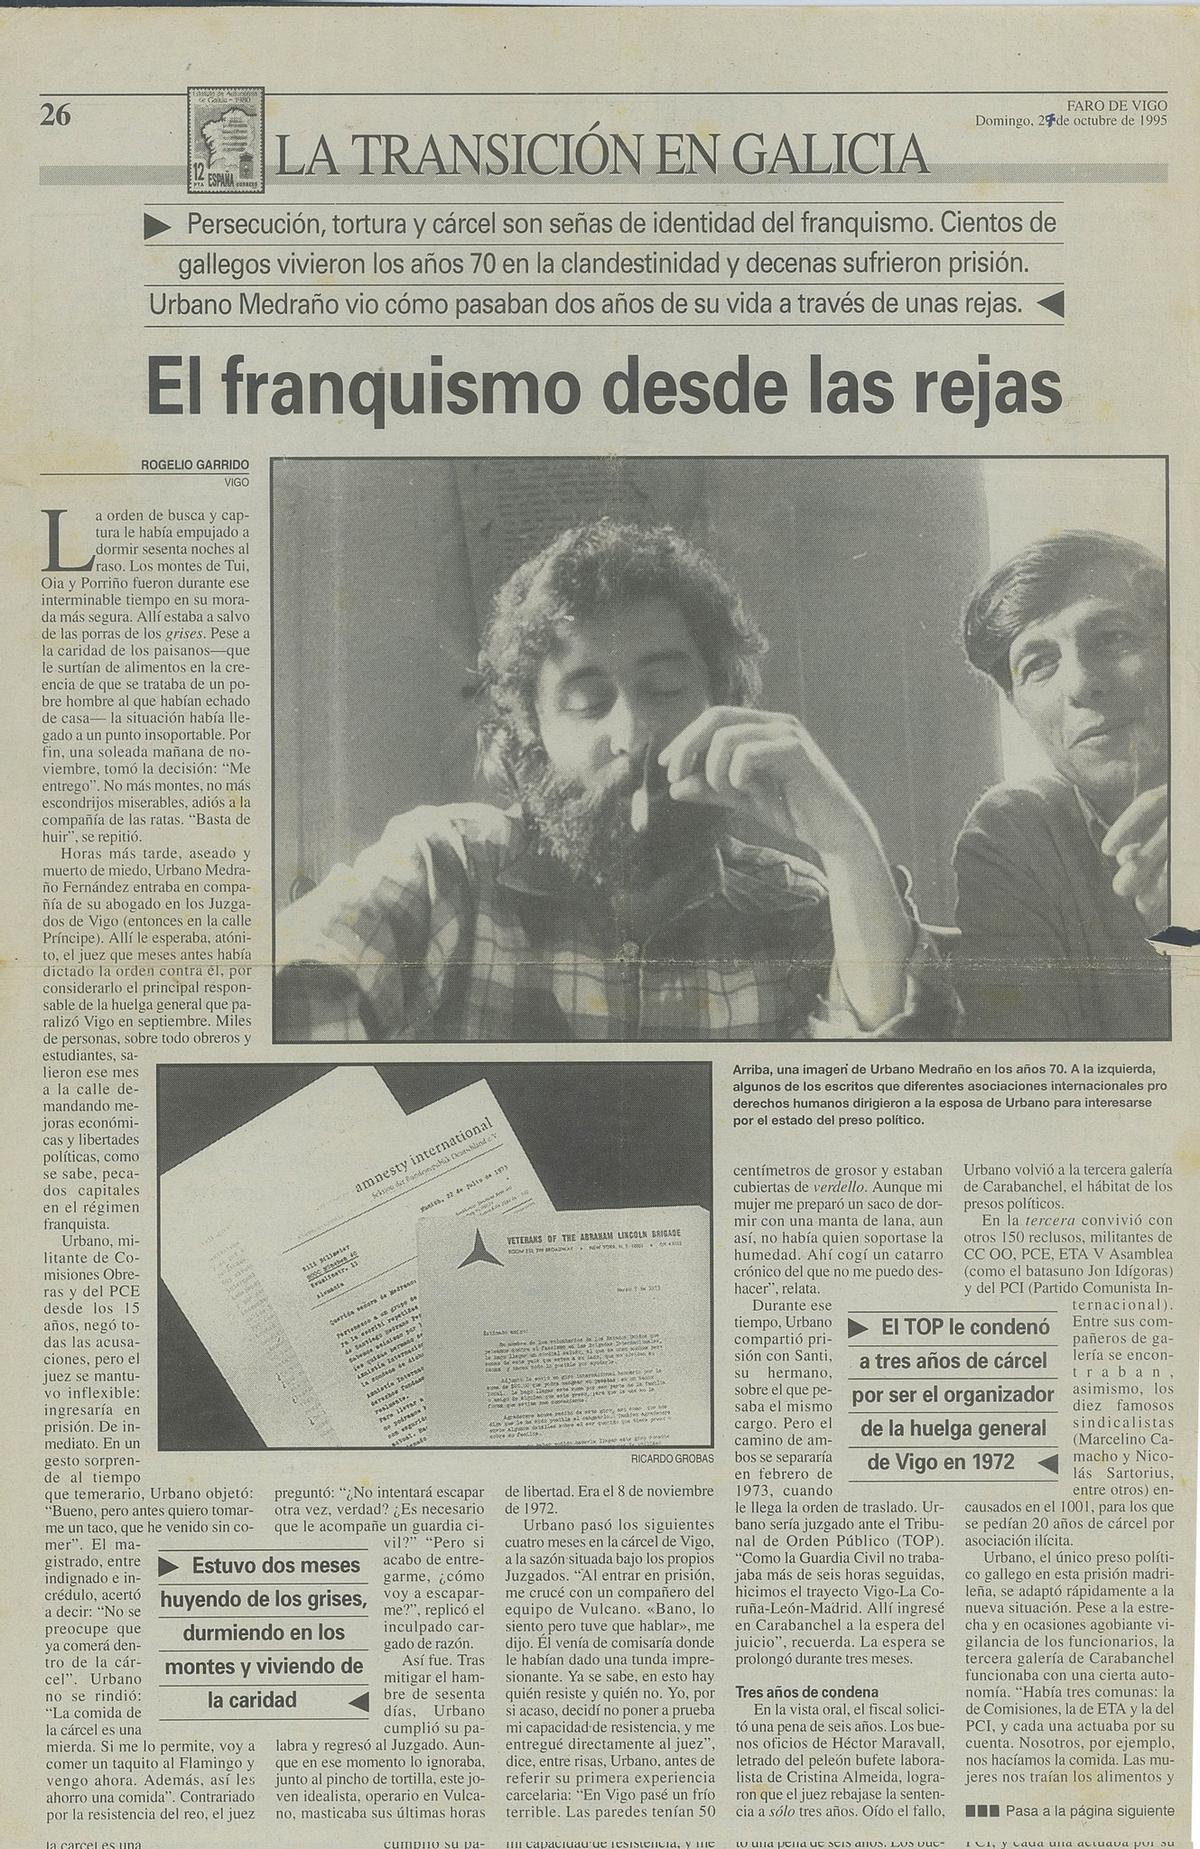 Primera parte de la doble página del artículo sobre Urbano Medraño publicado en 1995 en Faro de Vigo.